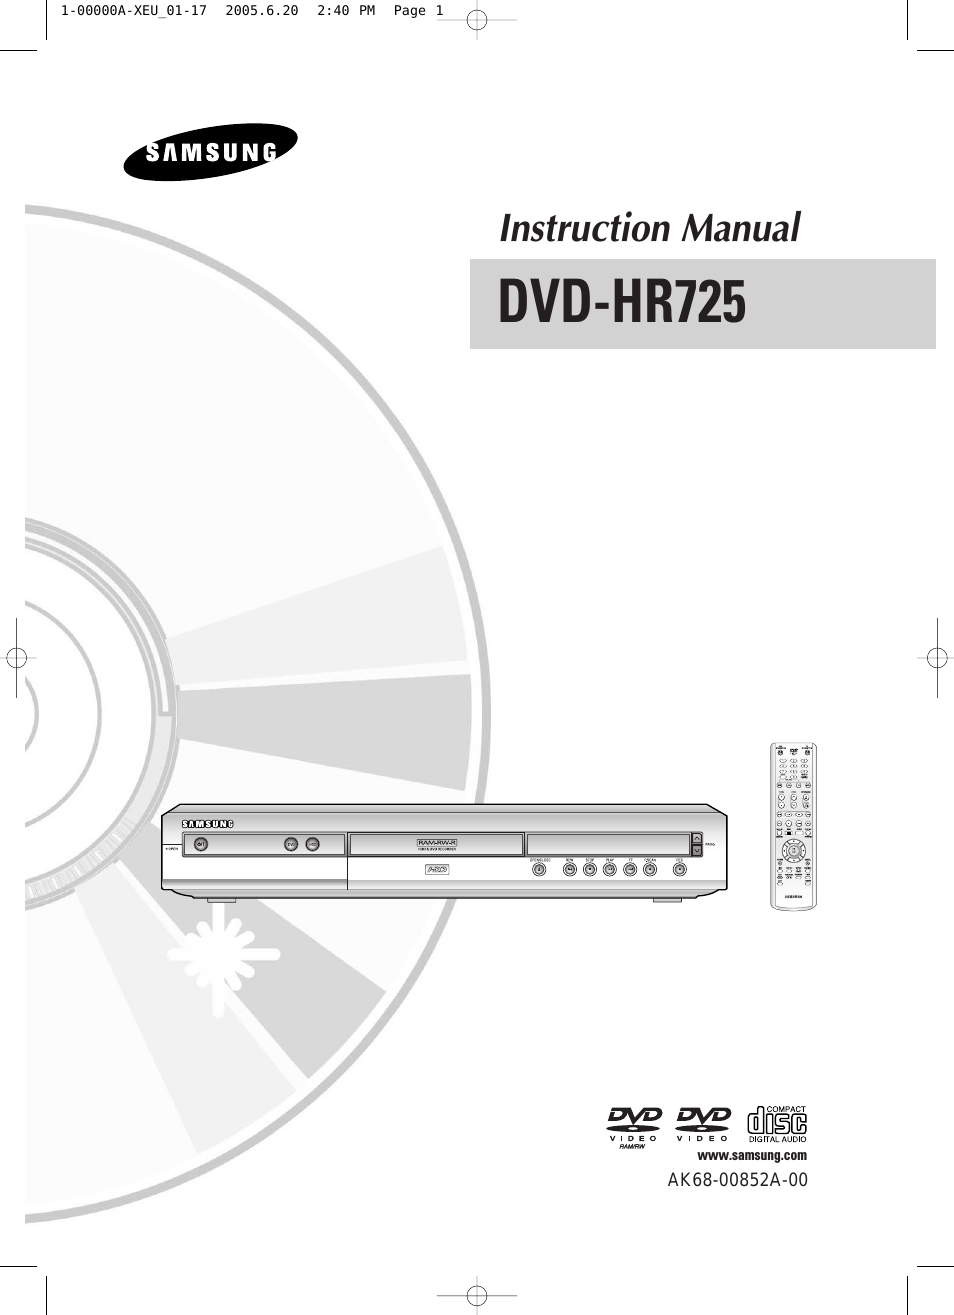 DVD-HR725